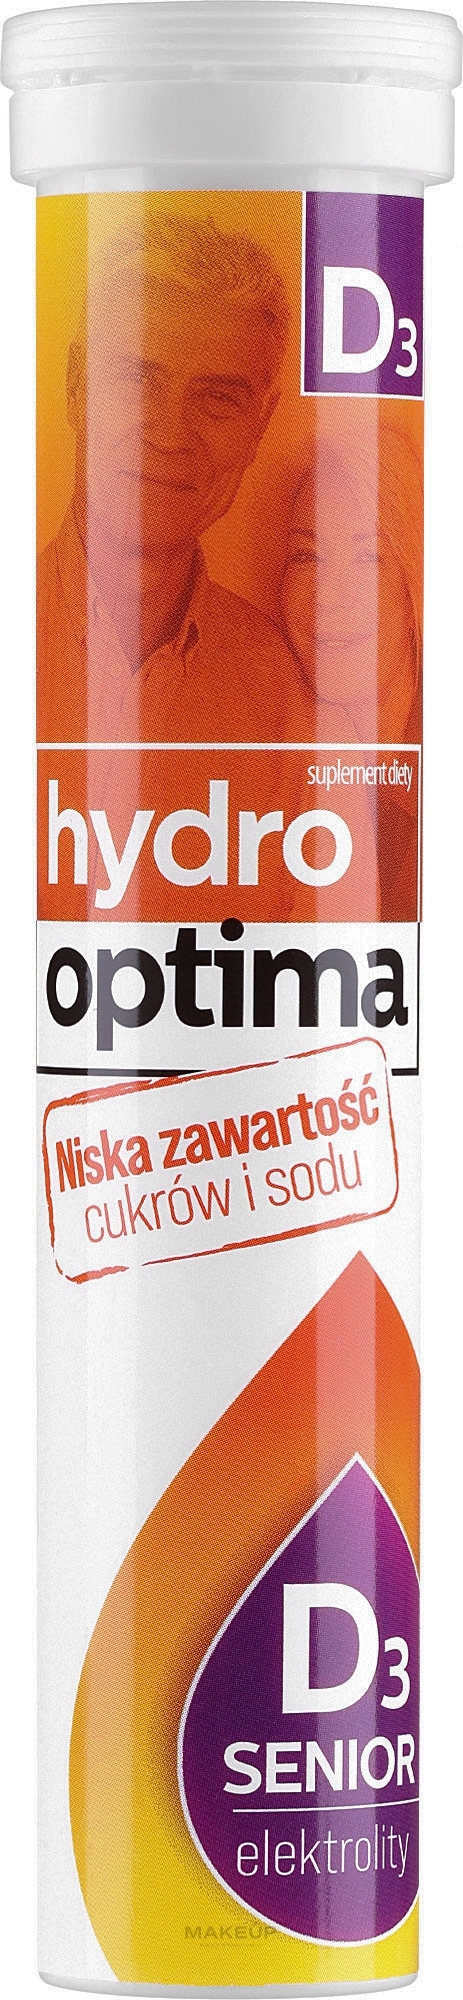 Диетическая добавка в таблетках - Aflofarm Hydro Optima Senior D3 — фото 20шт